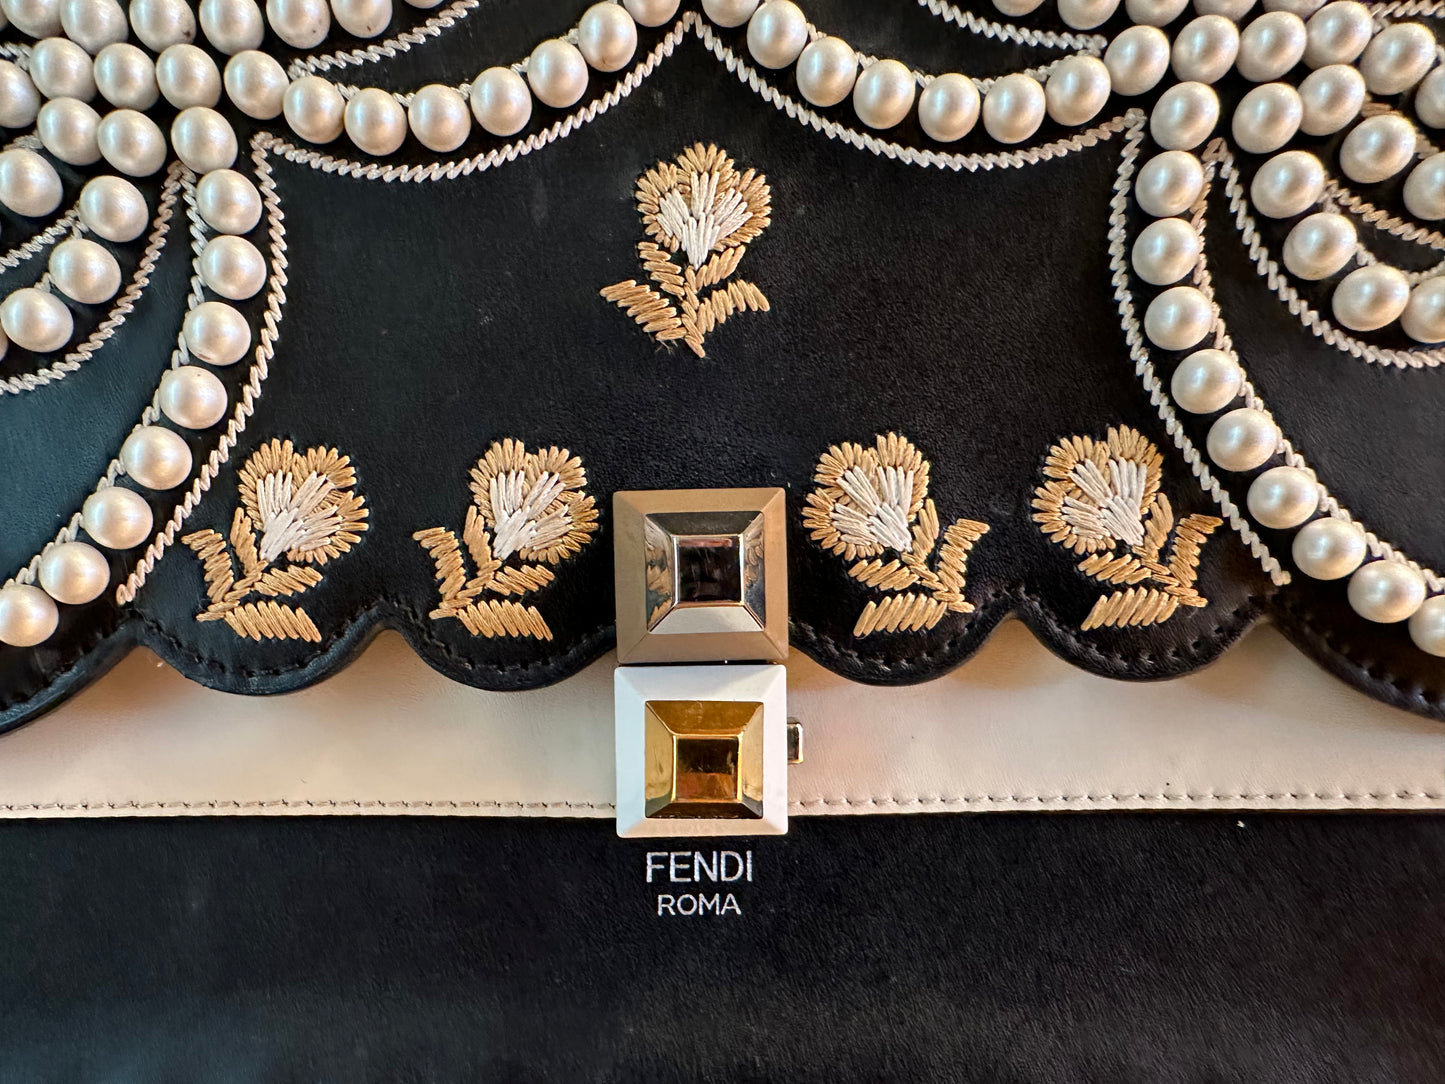 FENDI Black Leather Shoulder Bag with Pearls